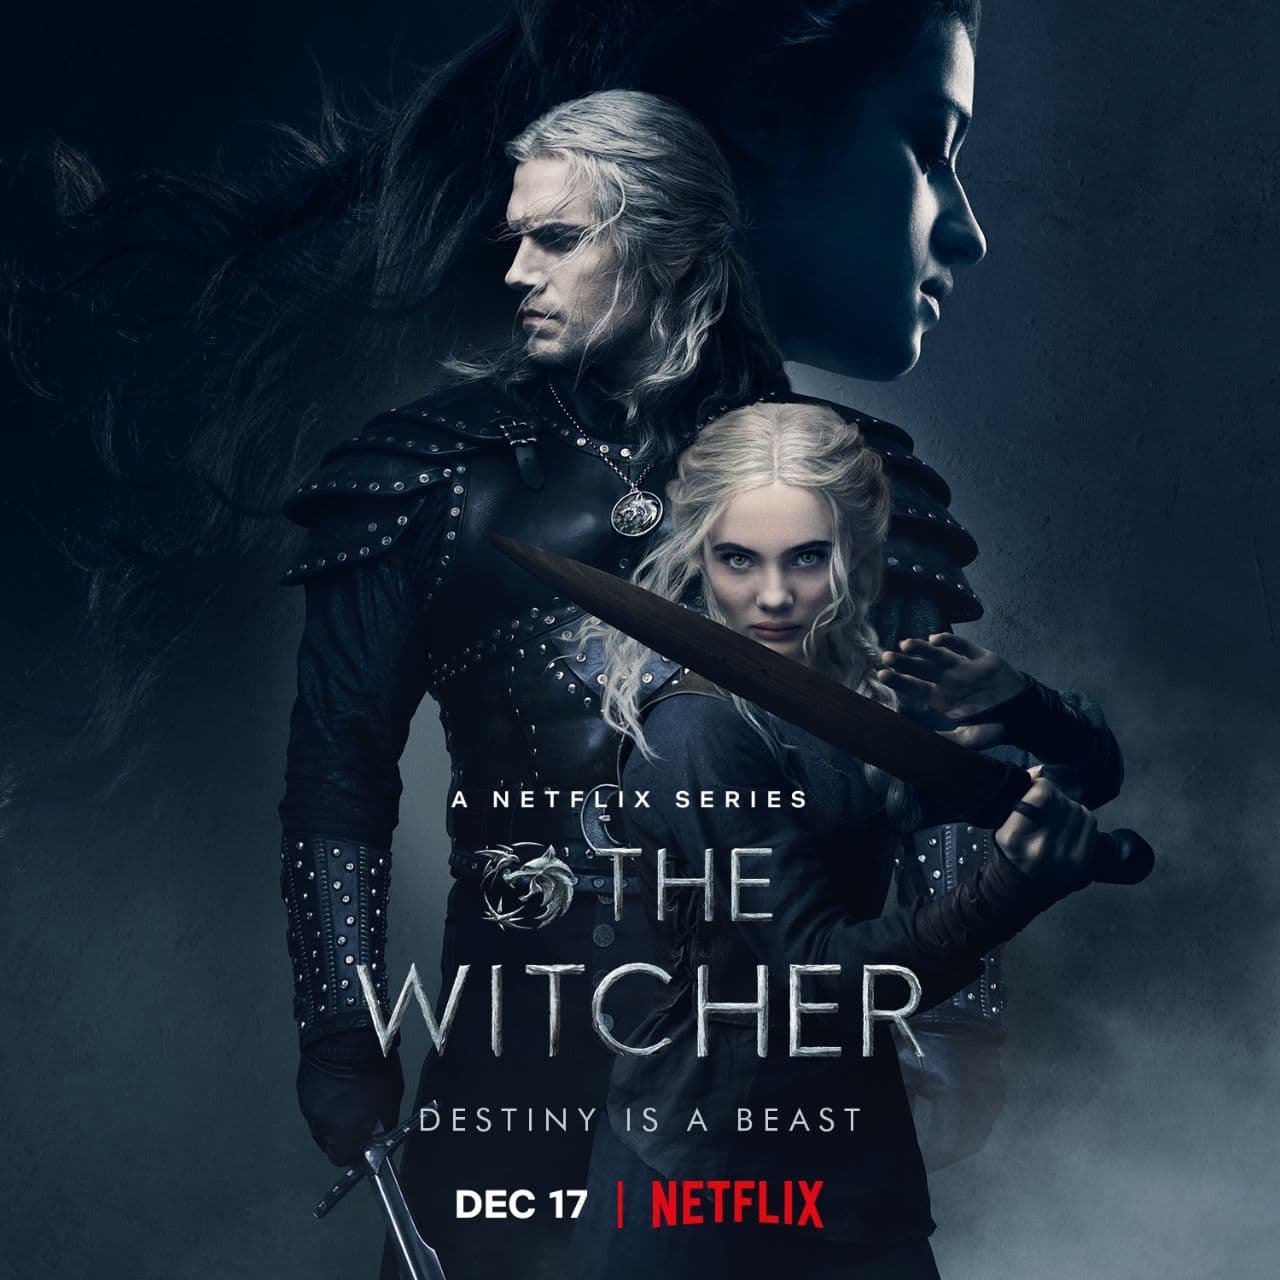 نمرات اولیه فصل دوم سریال ? The Witcher محصول نتفلیکس منتشر شد: ? Rotten Tomatoes: 100% (از 13 نقد) Ⓜ️ Metacritic: N/A ? نمرات بروز رسانی خواهند شد. انتشار تمامی قسمتها: ۱۴۰۰/٠٩/٢۶